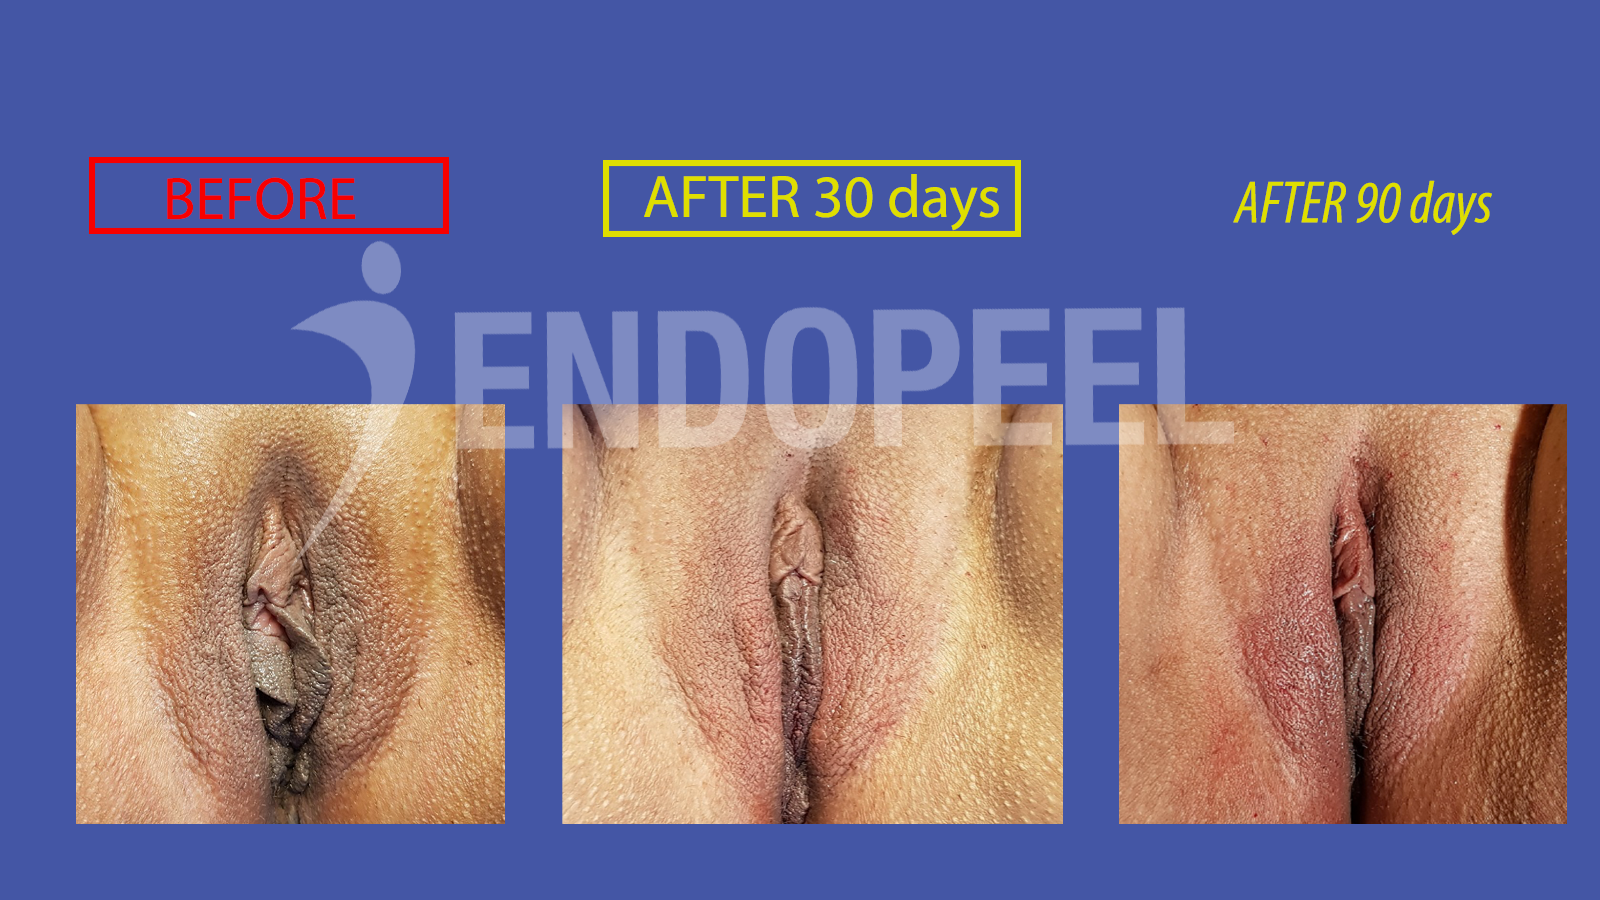 endopeel vulvar embellishment 12